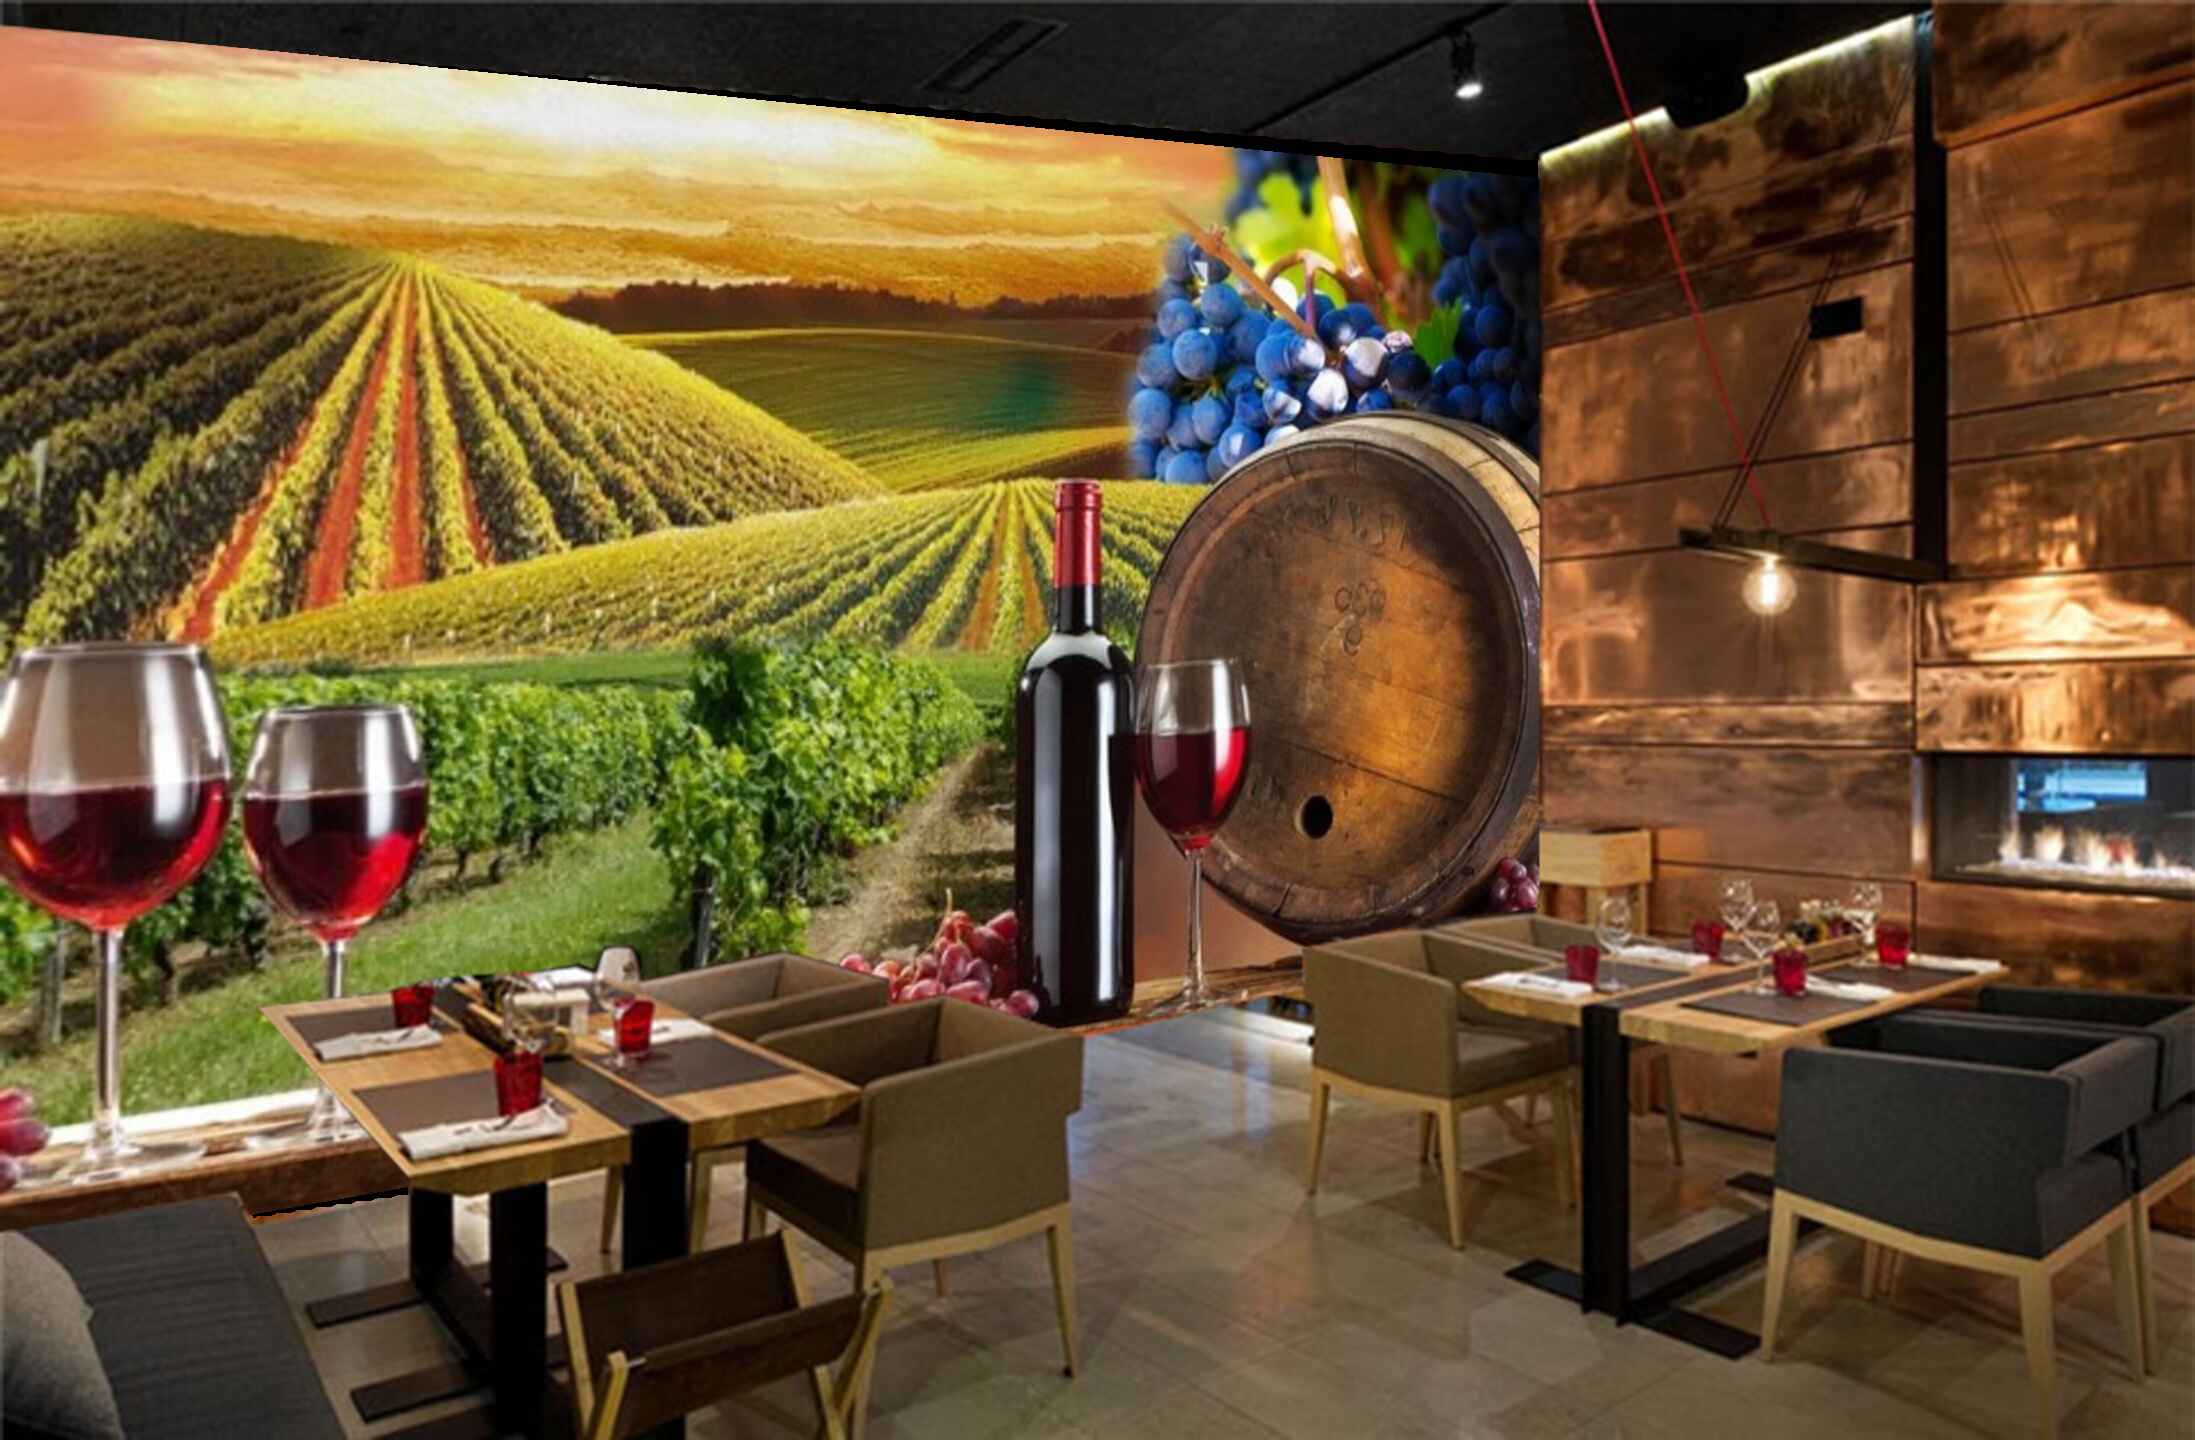 Avikalp MWZ3104 grape Wine Farm Glasses Bottle HD Wallpaper for Cafe Restaurant